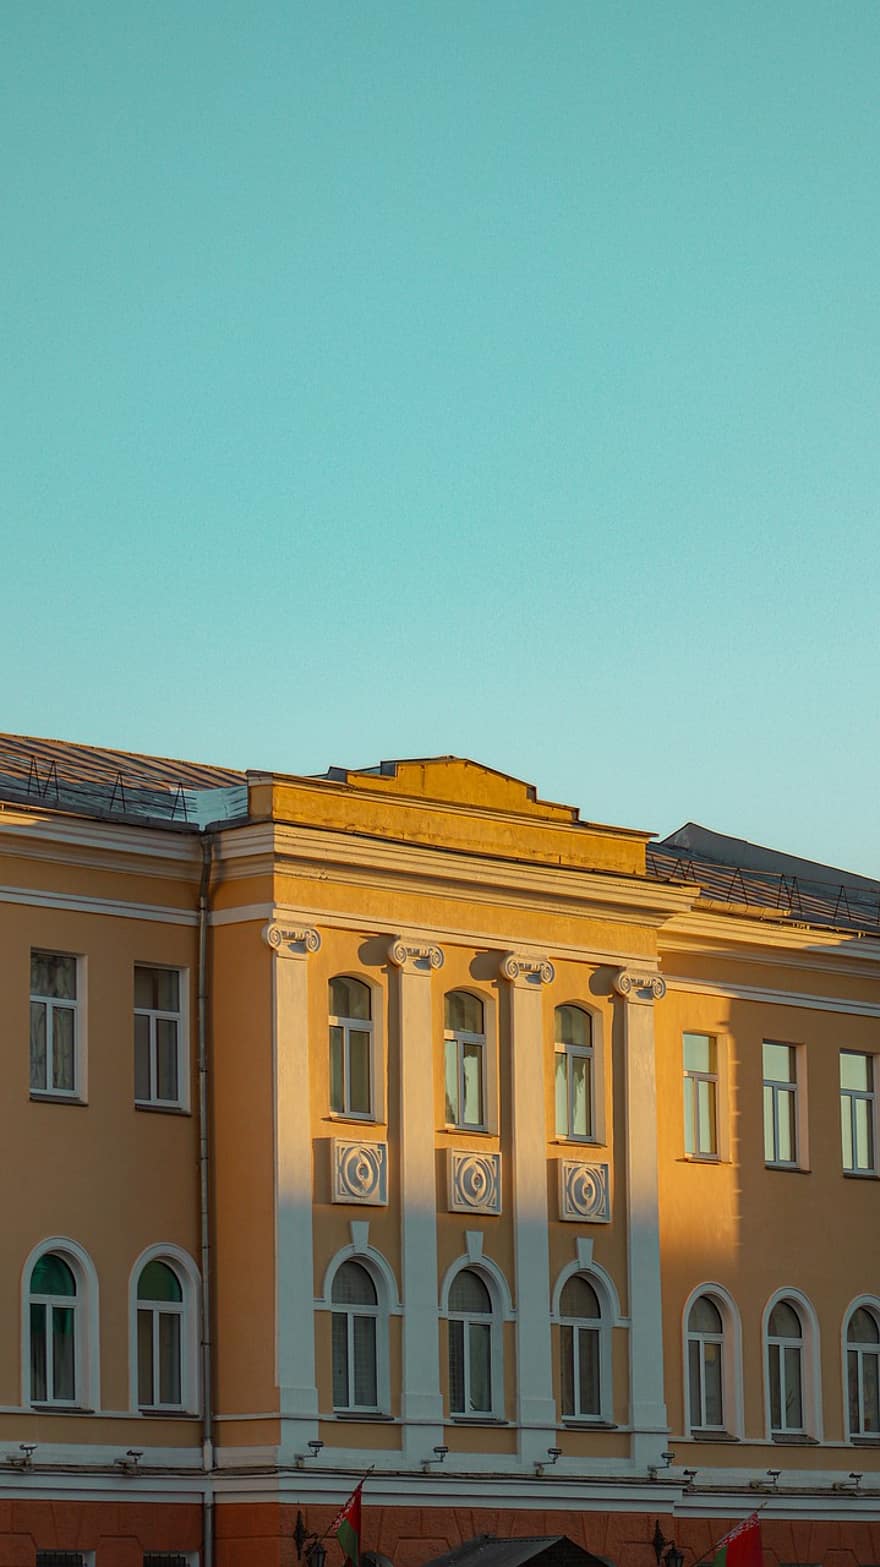 Minsk, Gebäude, die Architektur, Weißrussland, Fassade, Herrenhaus, Gebäudehülle, gebaute Struktur, Fenster, Blau, Stadtbild